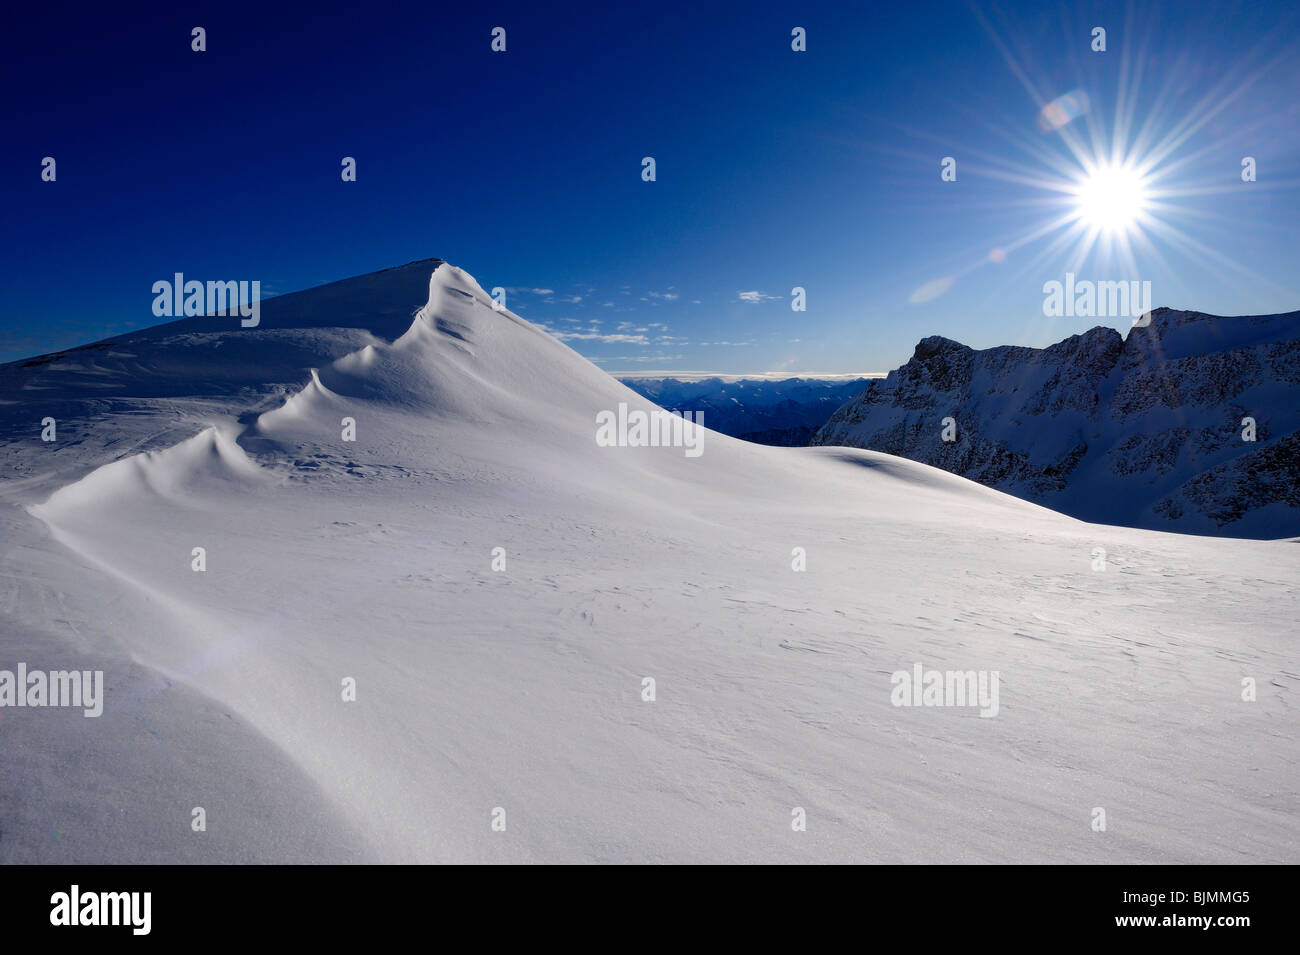 Corniche de neige avec ciel bleu et soleil en forme d'étoile, Coire, Grisons, Suisse, Europe Banque D'Images